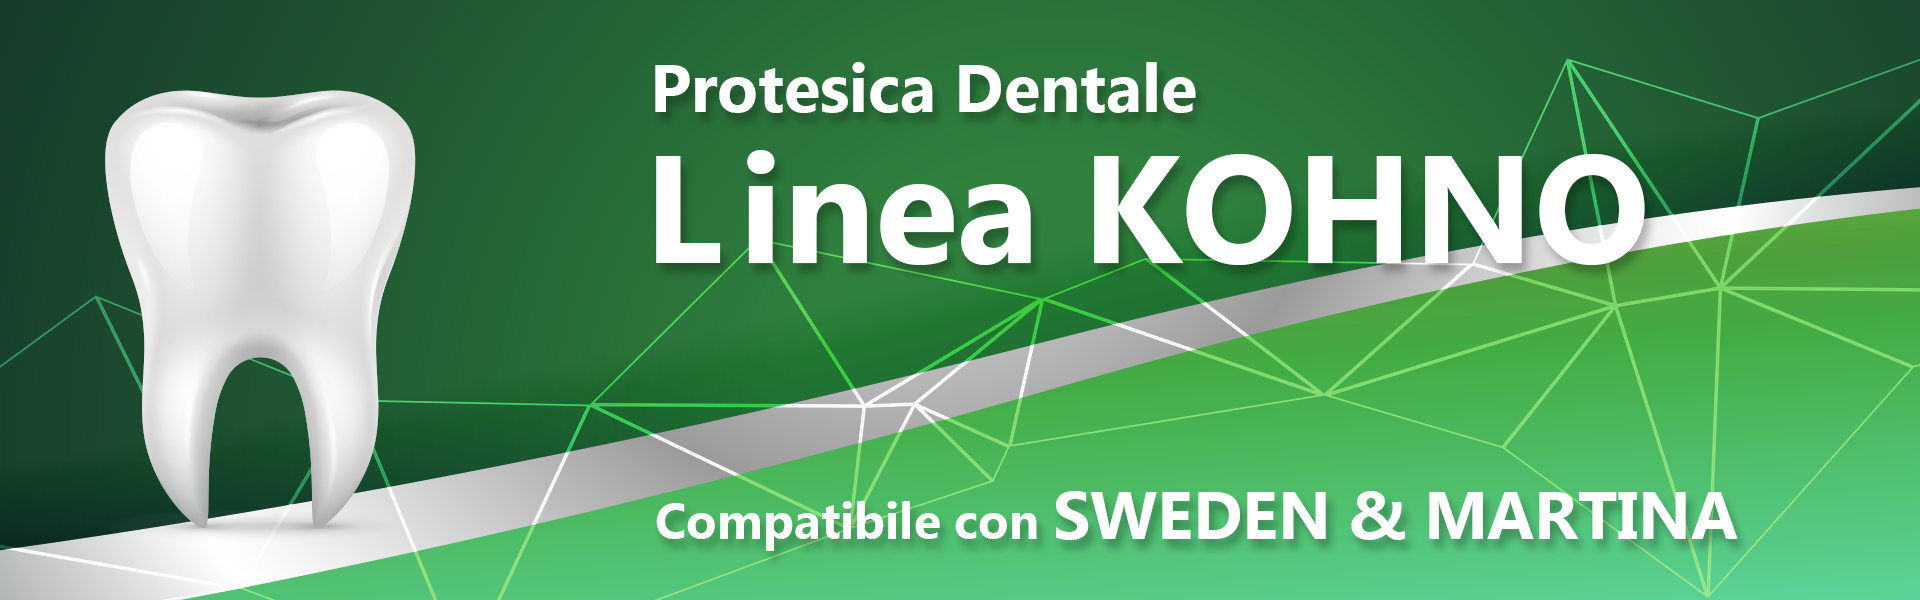 Linea KOHNO (compatibile con SWEDEN & MARTINA)